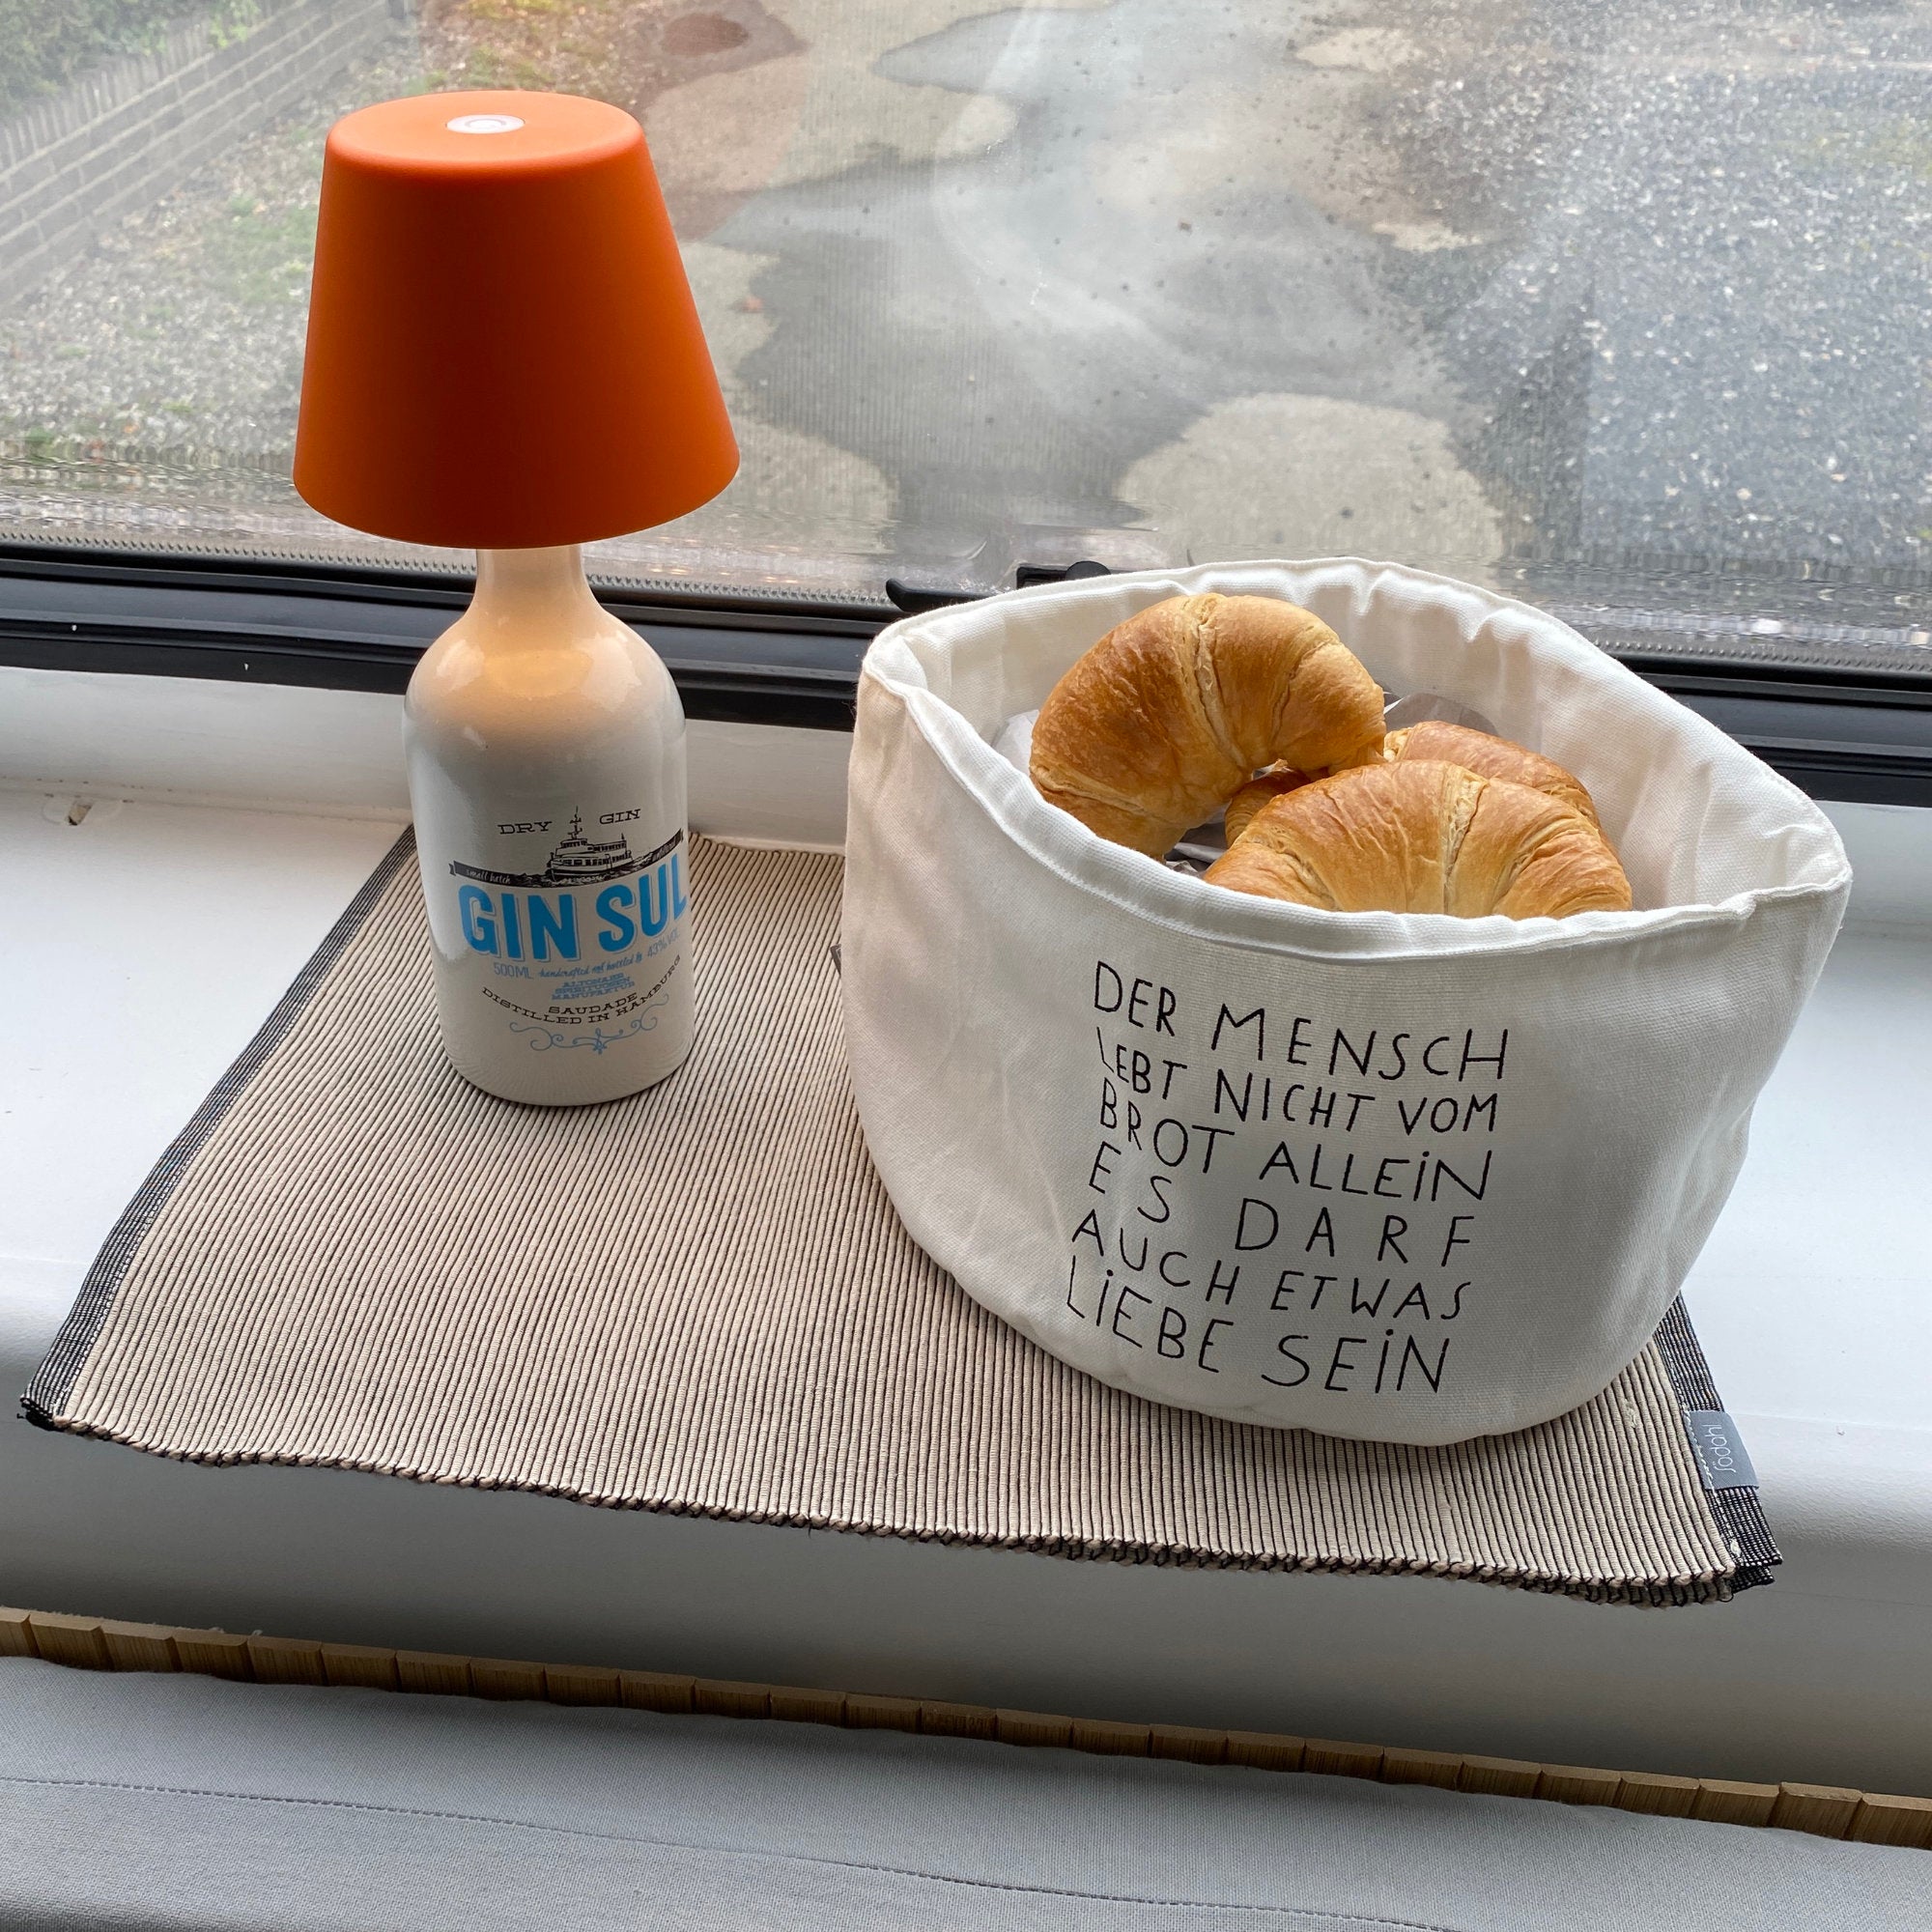 Frühstückskörbchen mit frischen Croissants steht neben einem praktischem Lampenaufsatz für leere Flaschen.